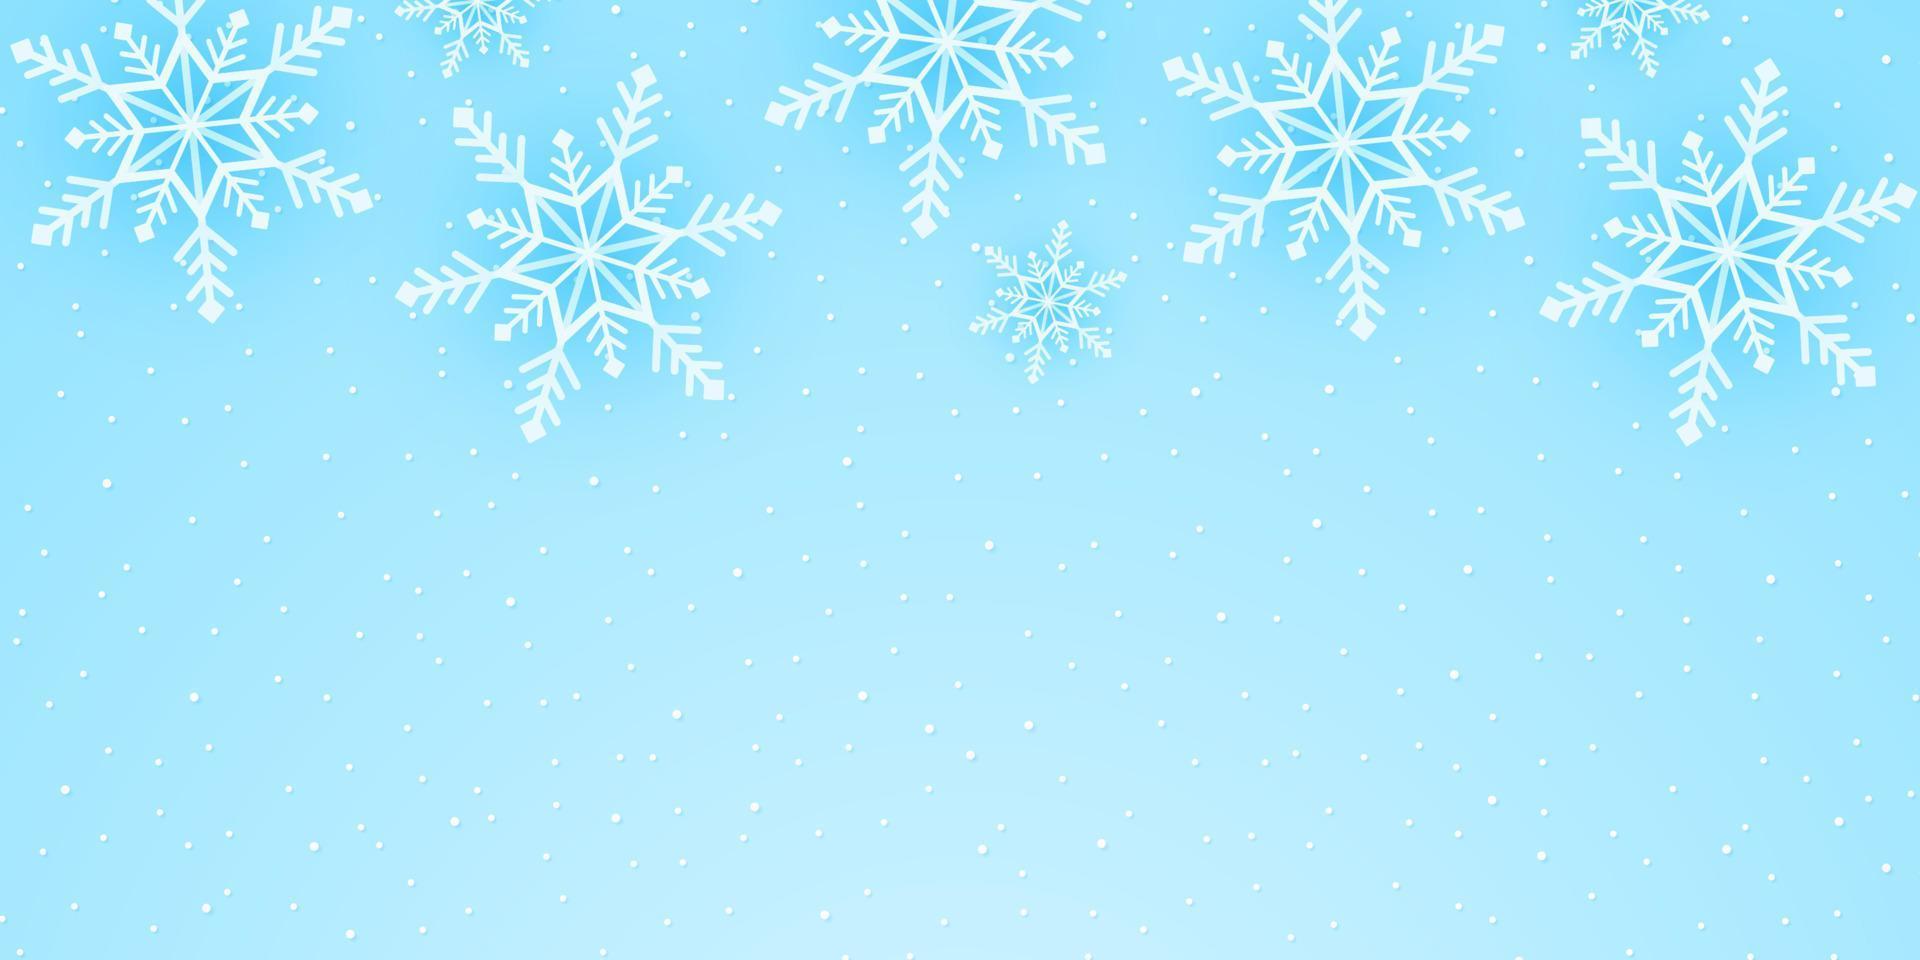 buon natale, fiocchi di neve e sfondo di nevicate in stile arte cartacea vettore